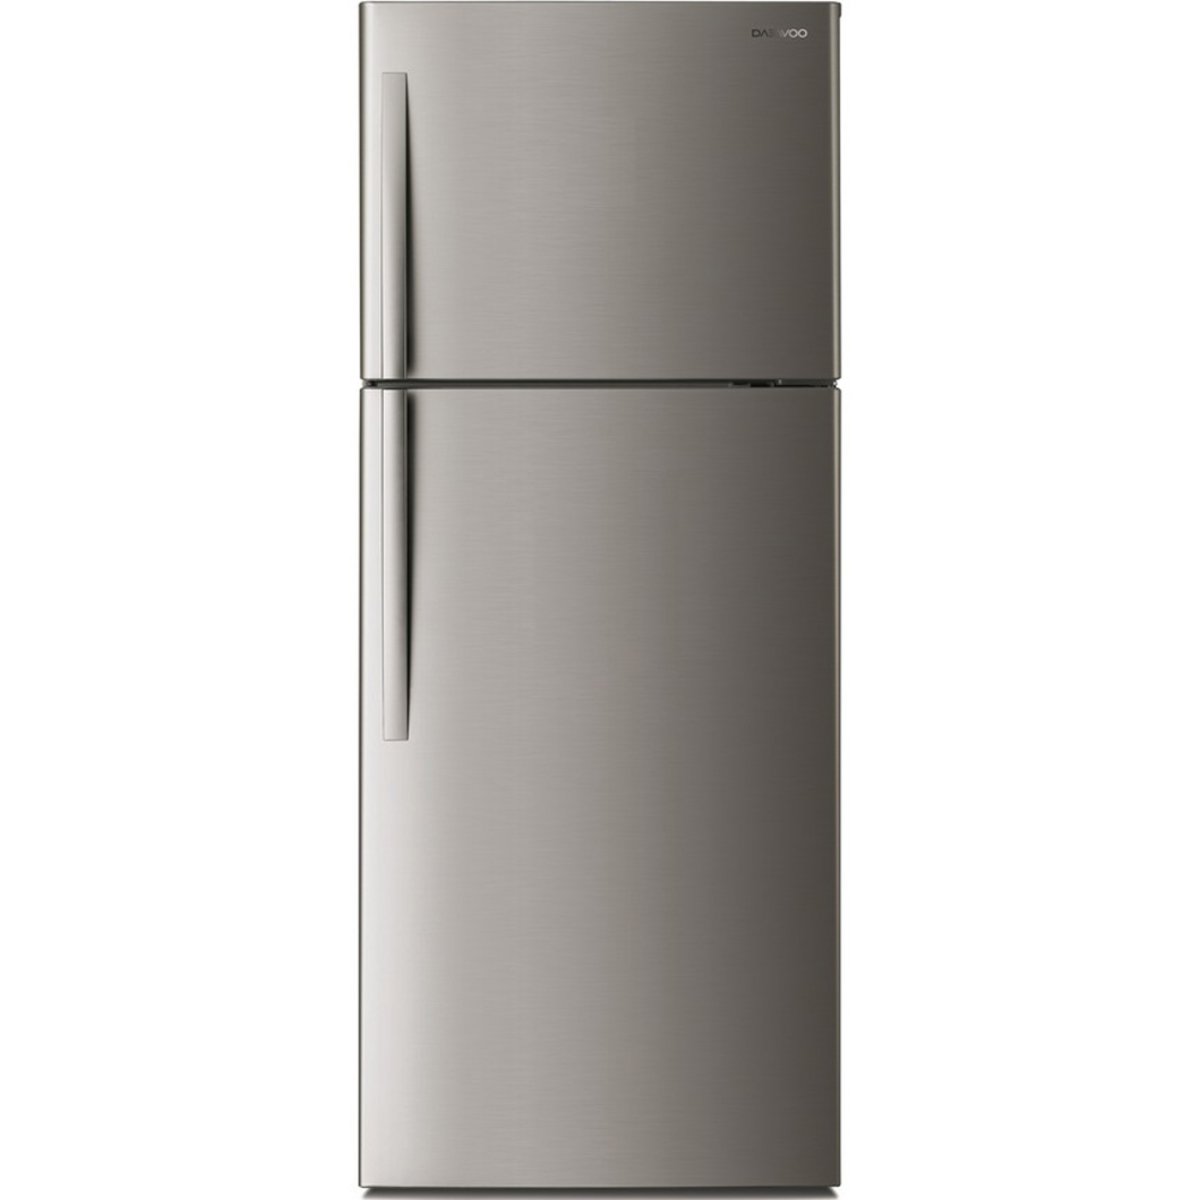 Daewoo Double Door Refrigerator FN-405SE 400 Ltr